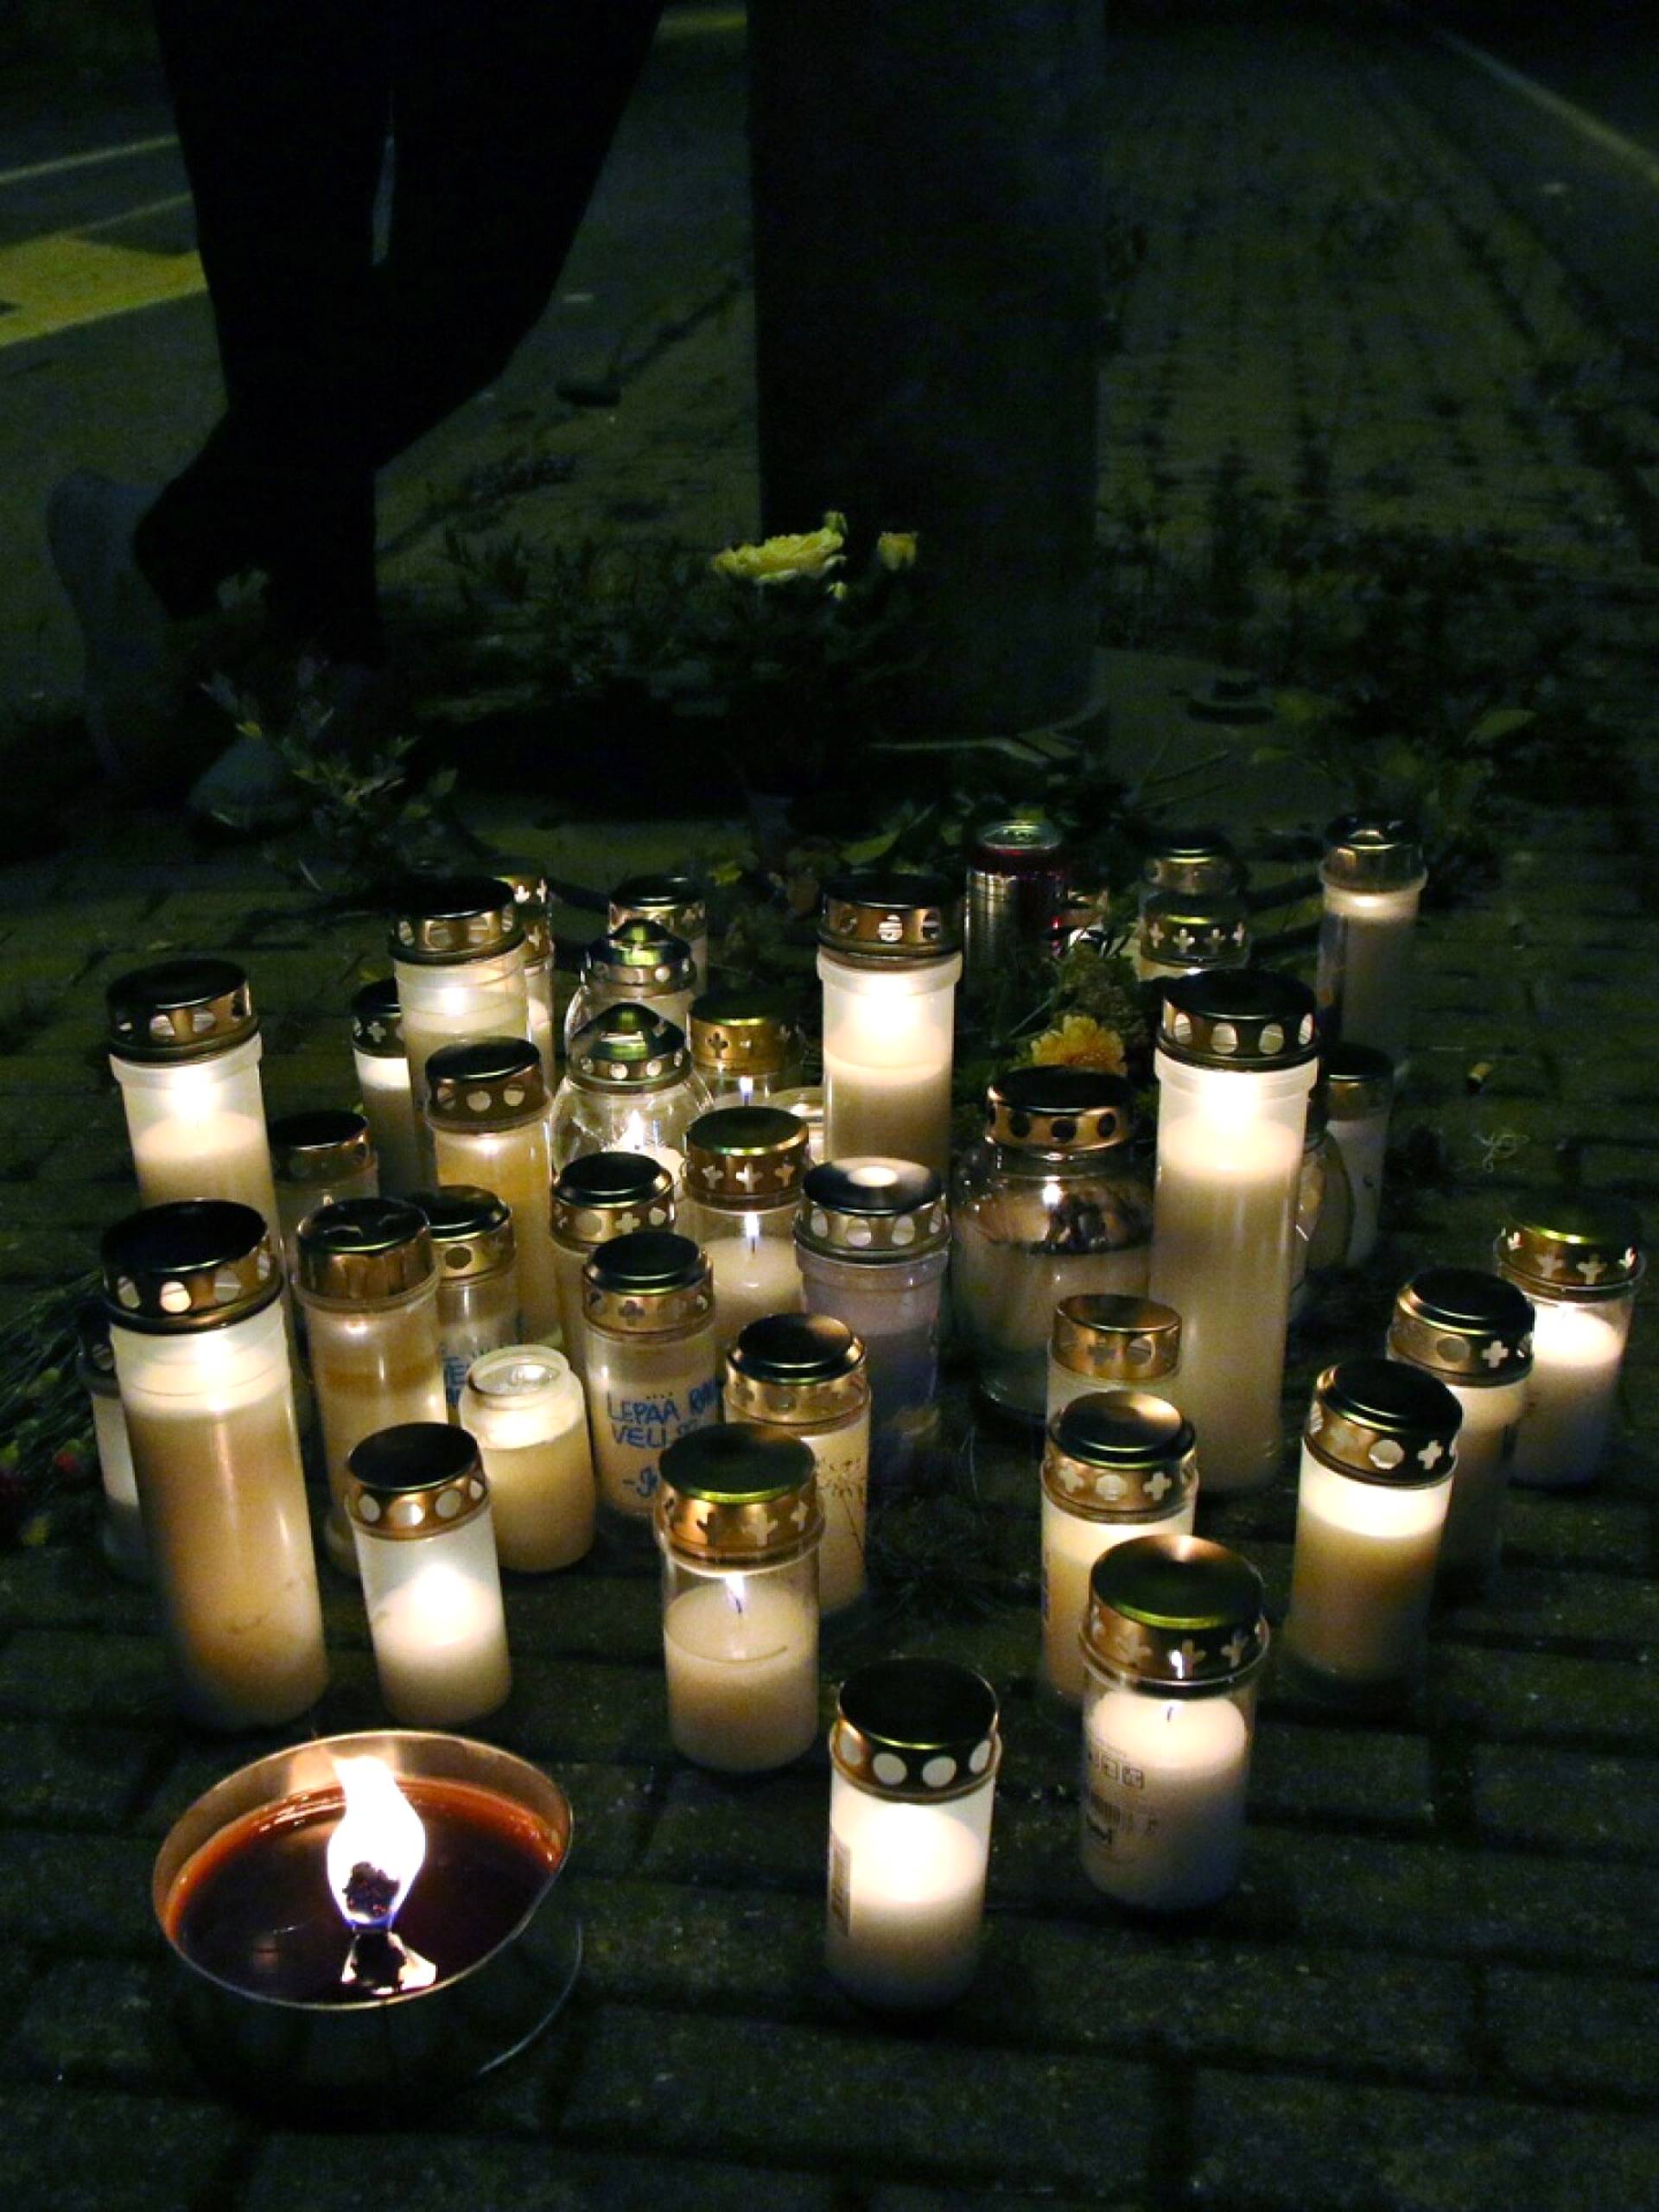 Onnettomuuspaikalle oli jätetty kynttilöitä tapahtuma-aikaan viime vuoden lokakuussa.